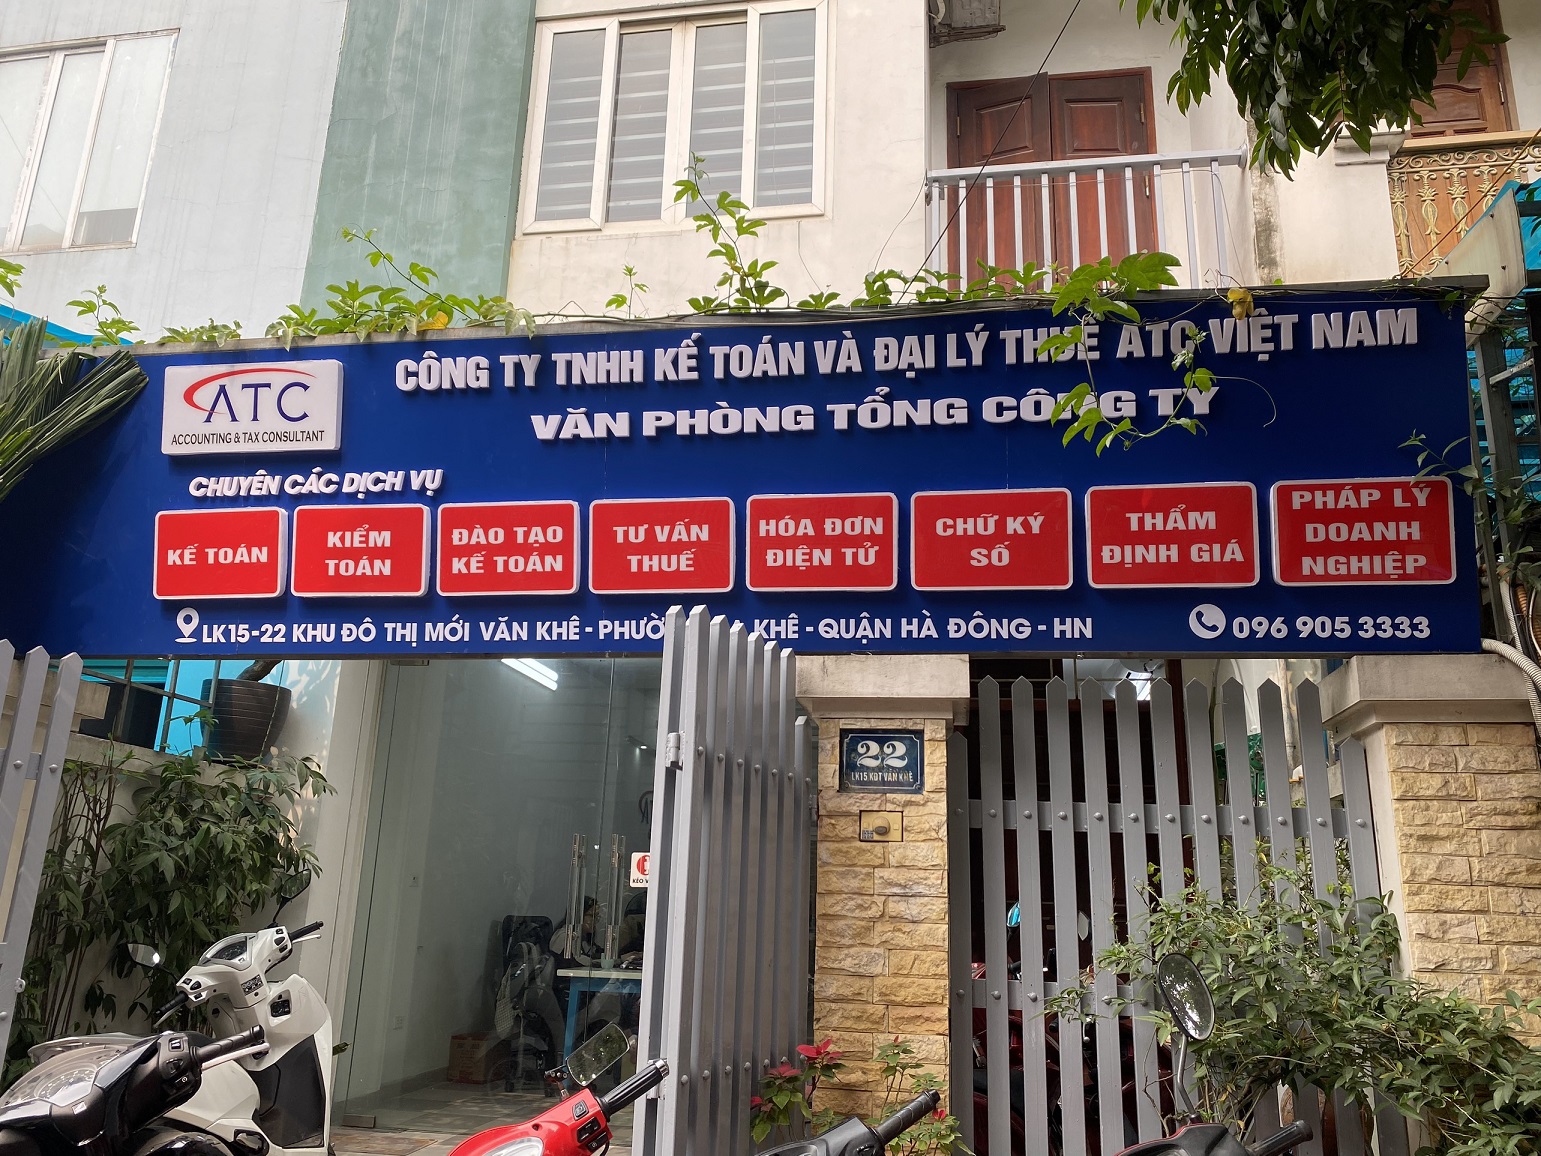 Việc làm đang tuyển dụng tại Công Ty TNHH Kế Toán Và Đại Lý Thuế ATC Việt Nam